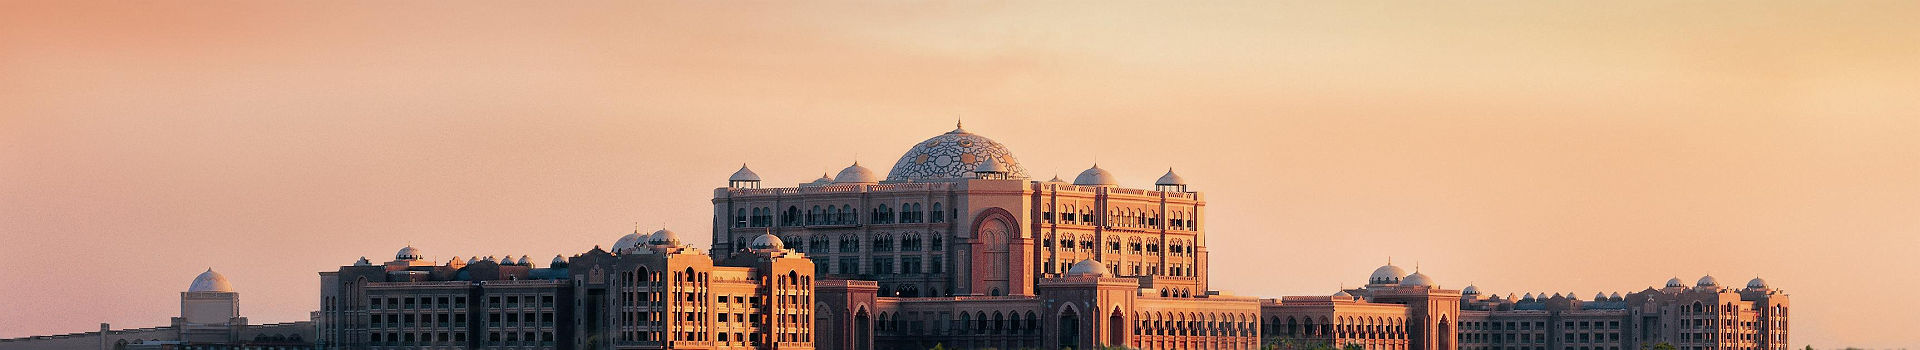 Emirate Palace à Abu Dhabi - Emirats Arabes Unies